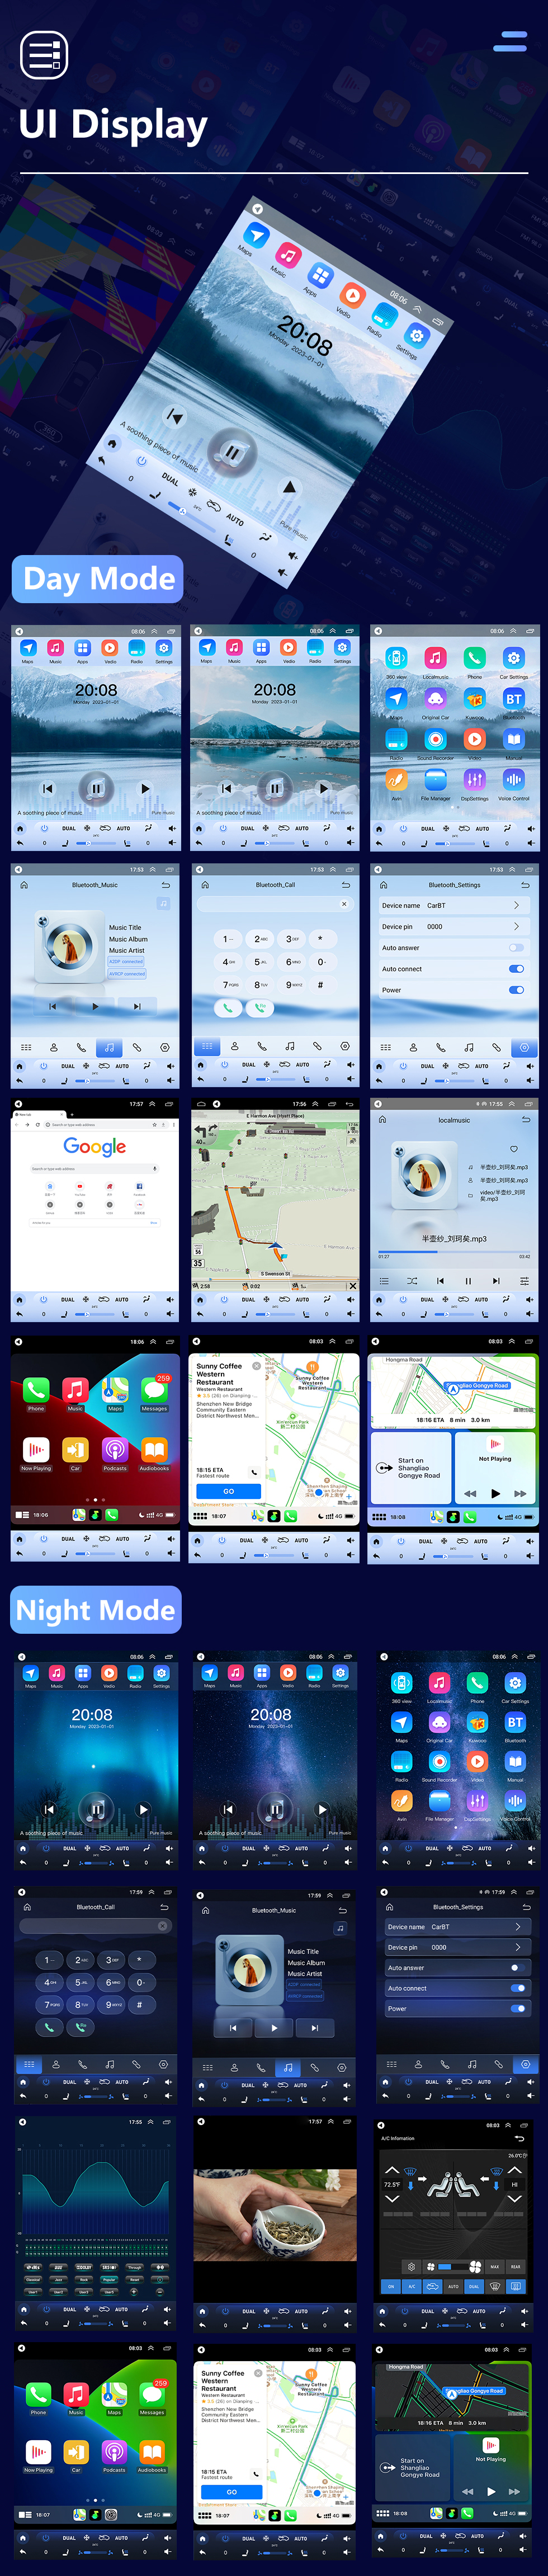 Seicane 2011-2015 Nissan Tiida 9,7-дюймовый Android 10.0 GPS-навигация Радио с HD-сенсорным экраном Поддержка Bluetooth WIFI Carplay Задняя камера